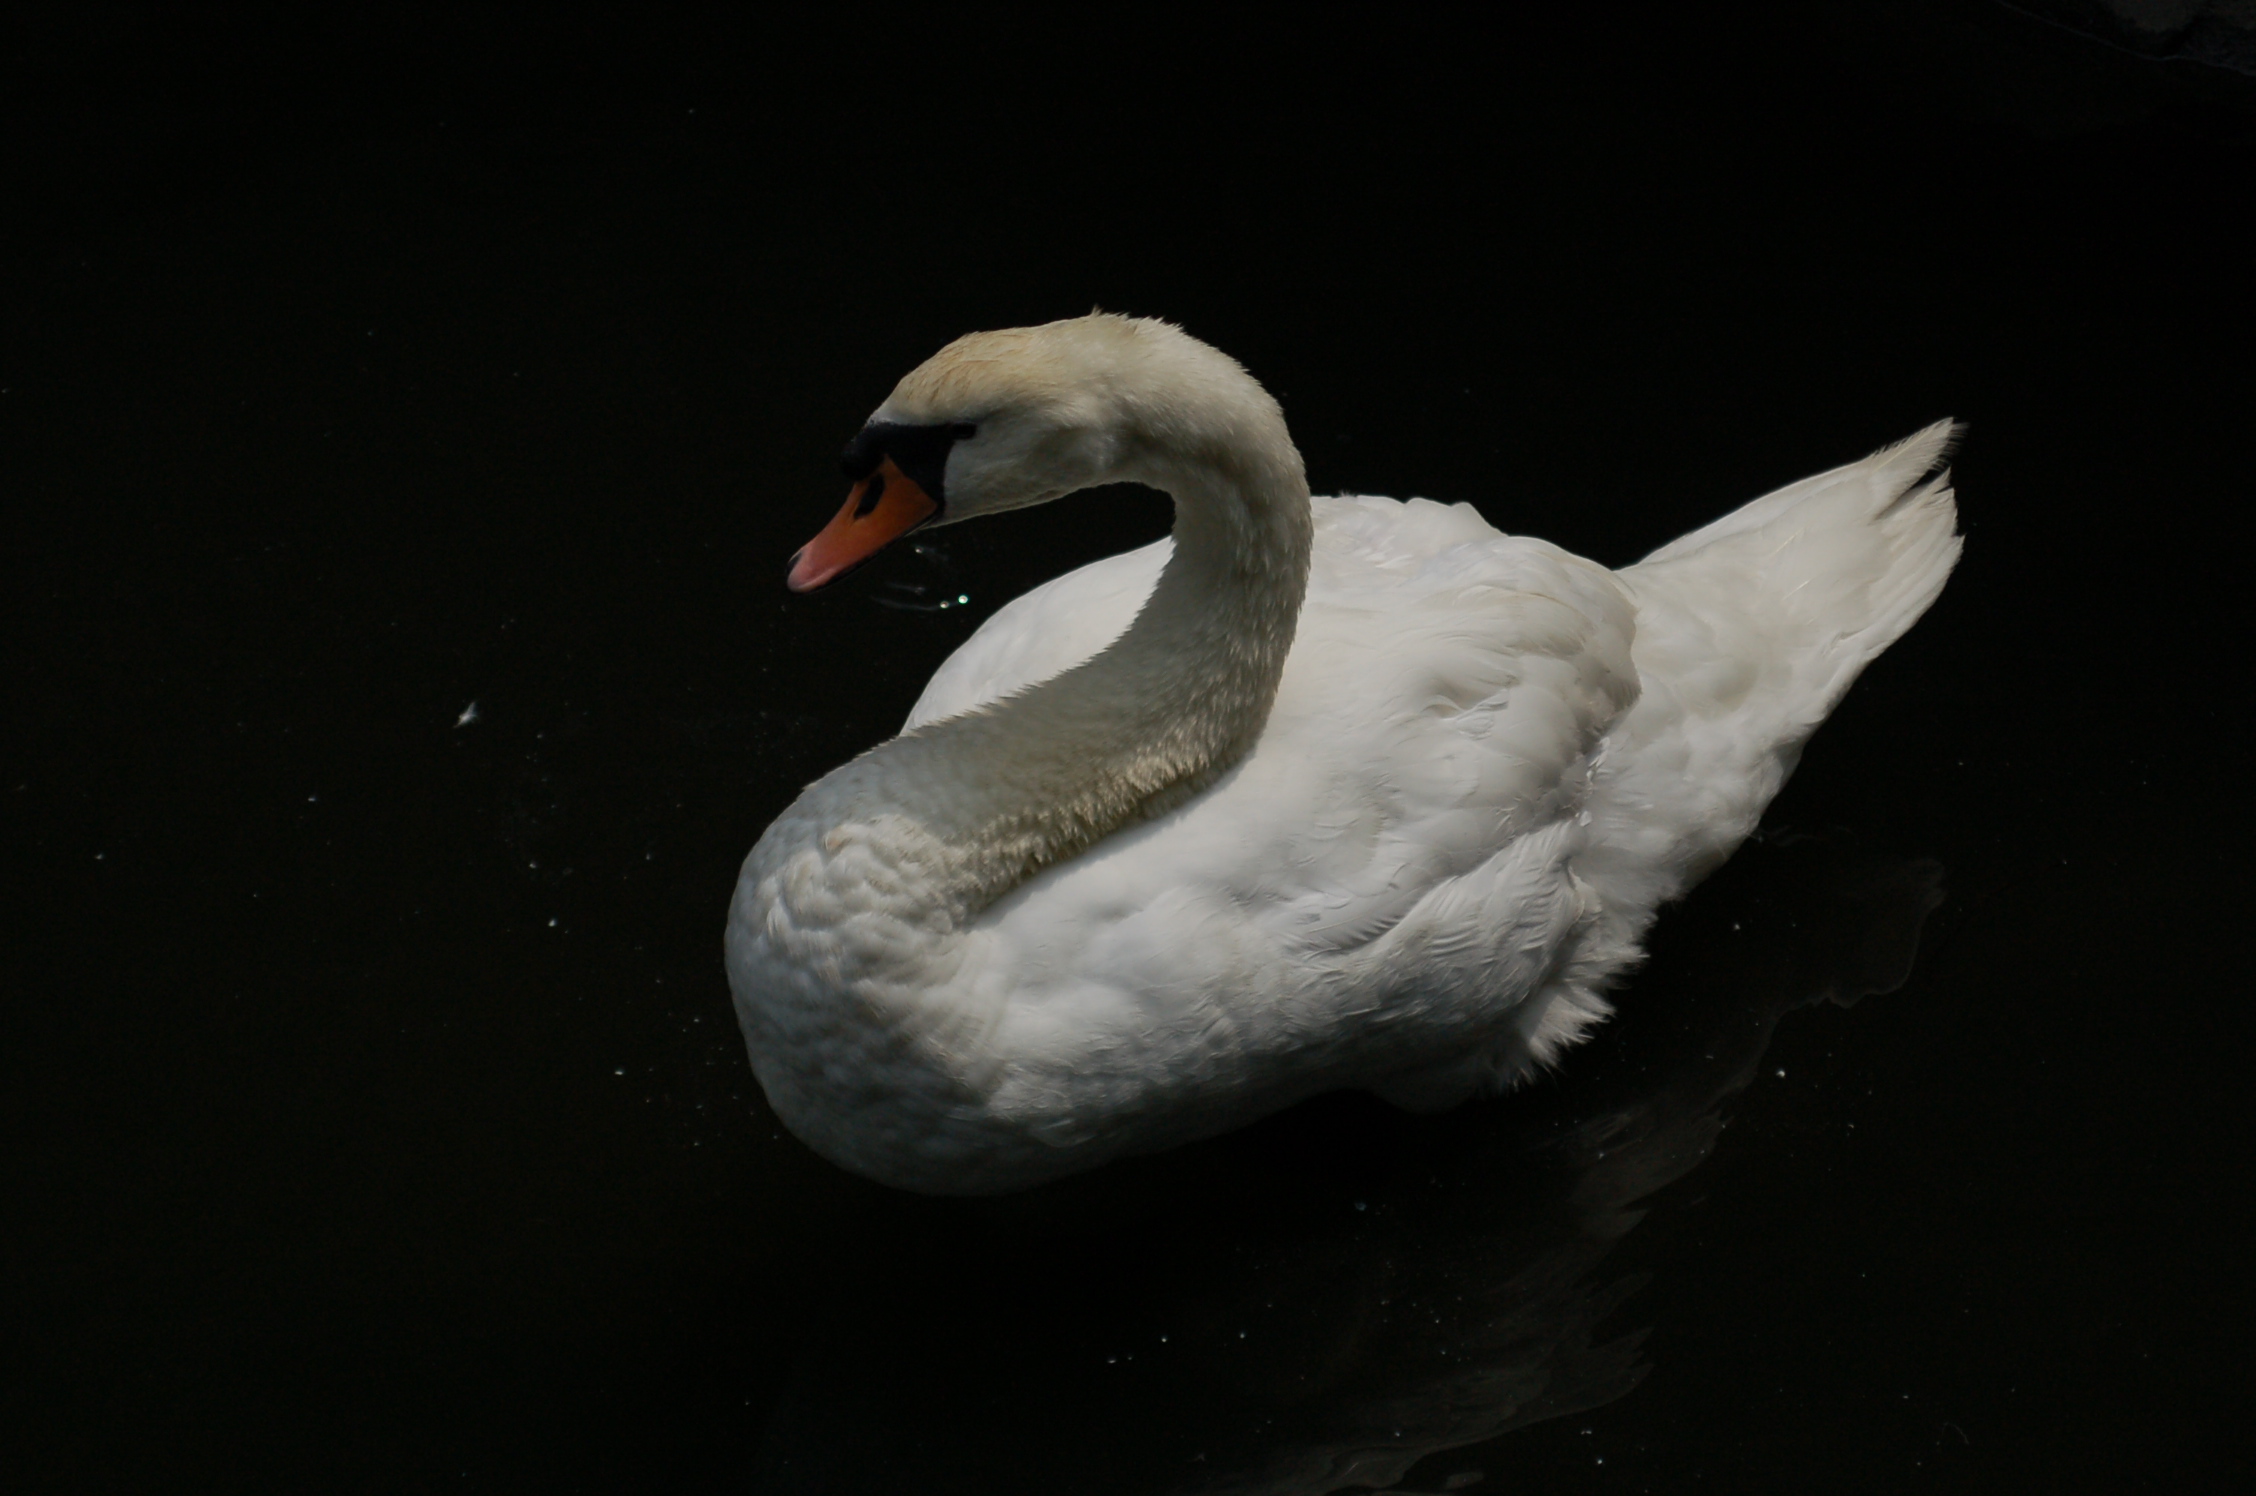 a white swan sitting in a dark water